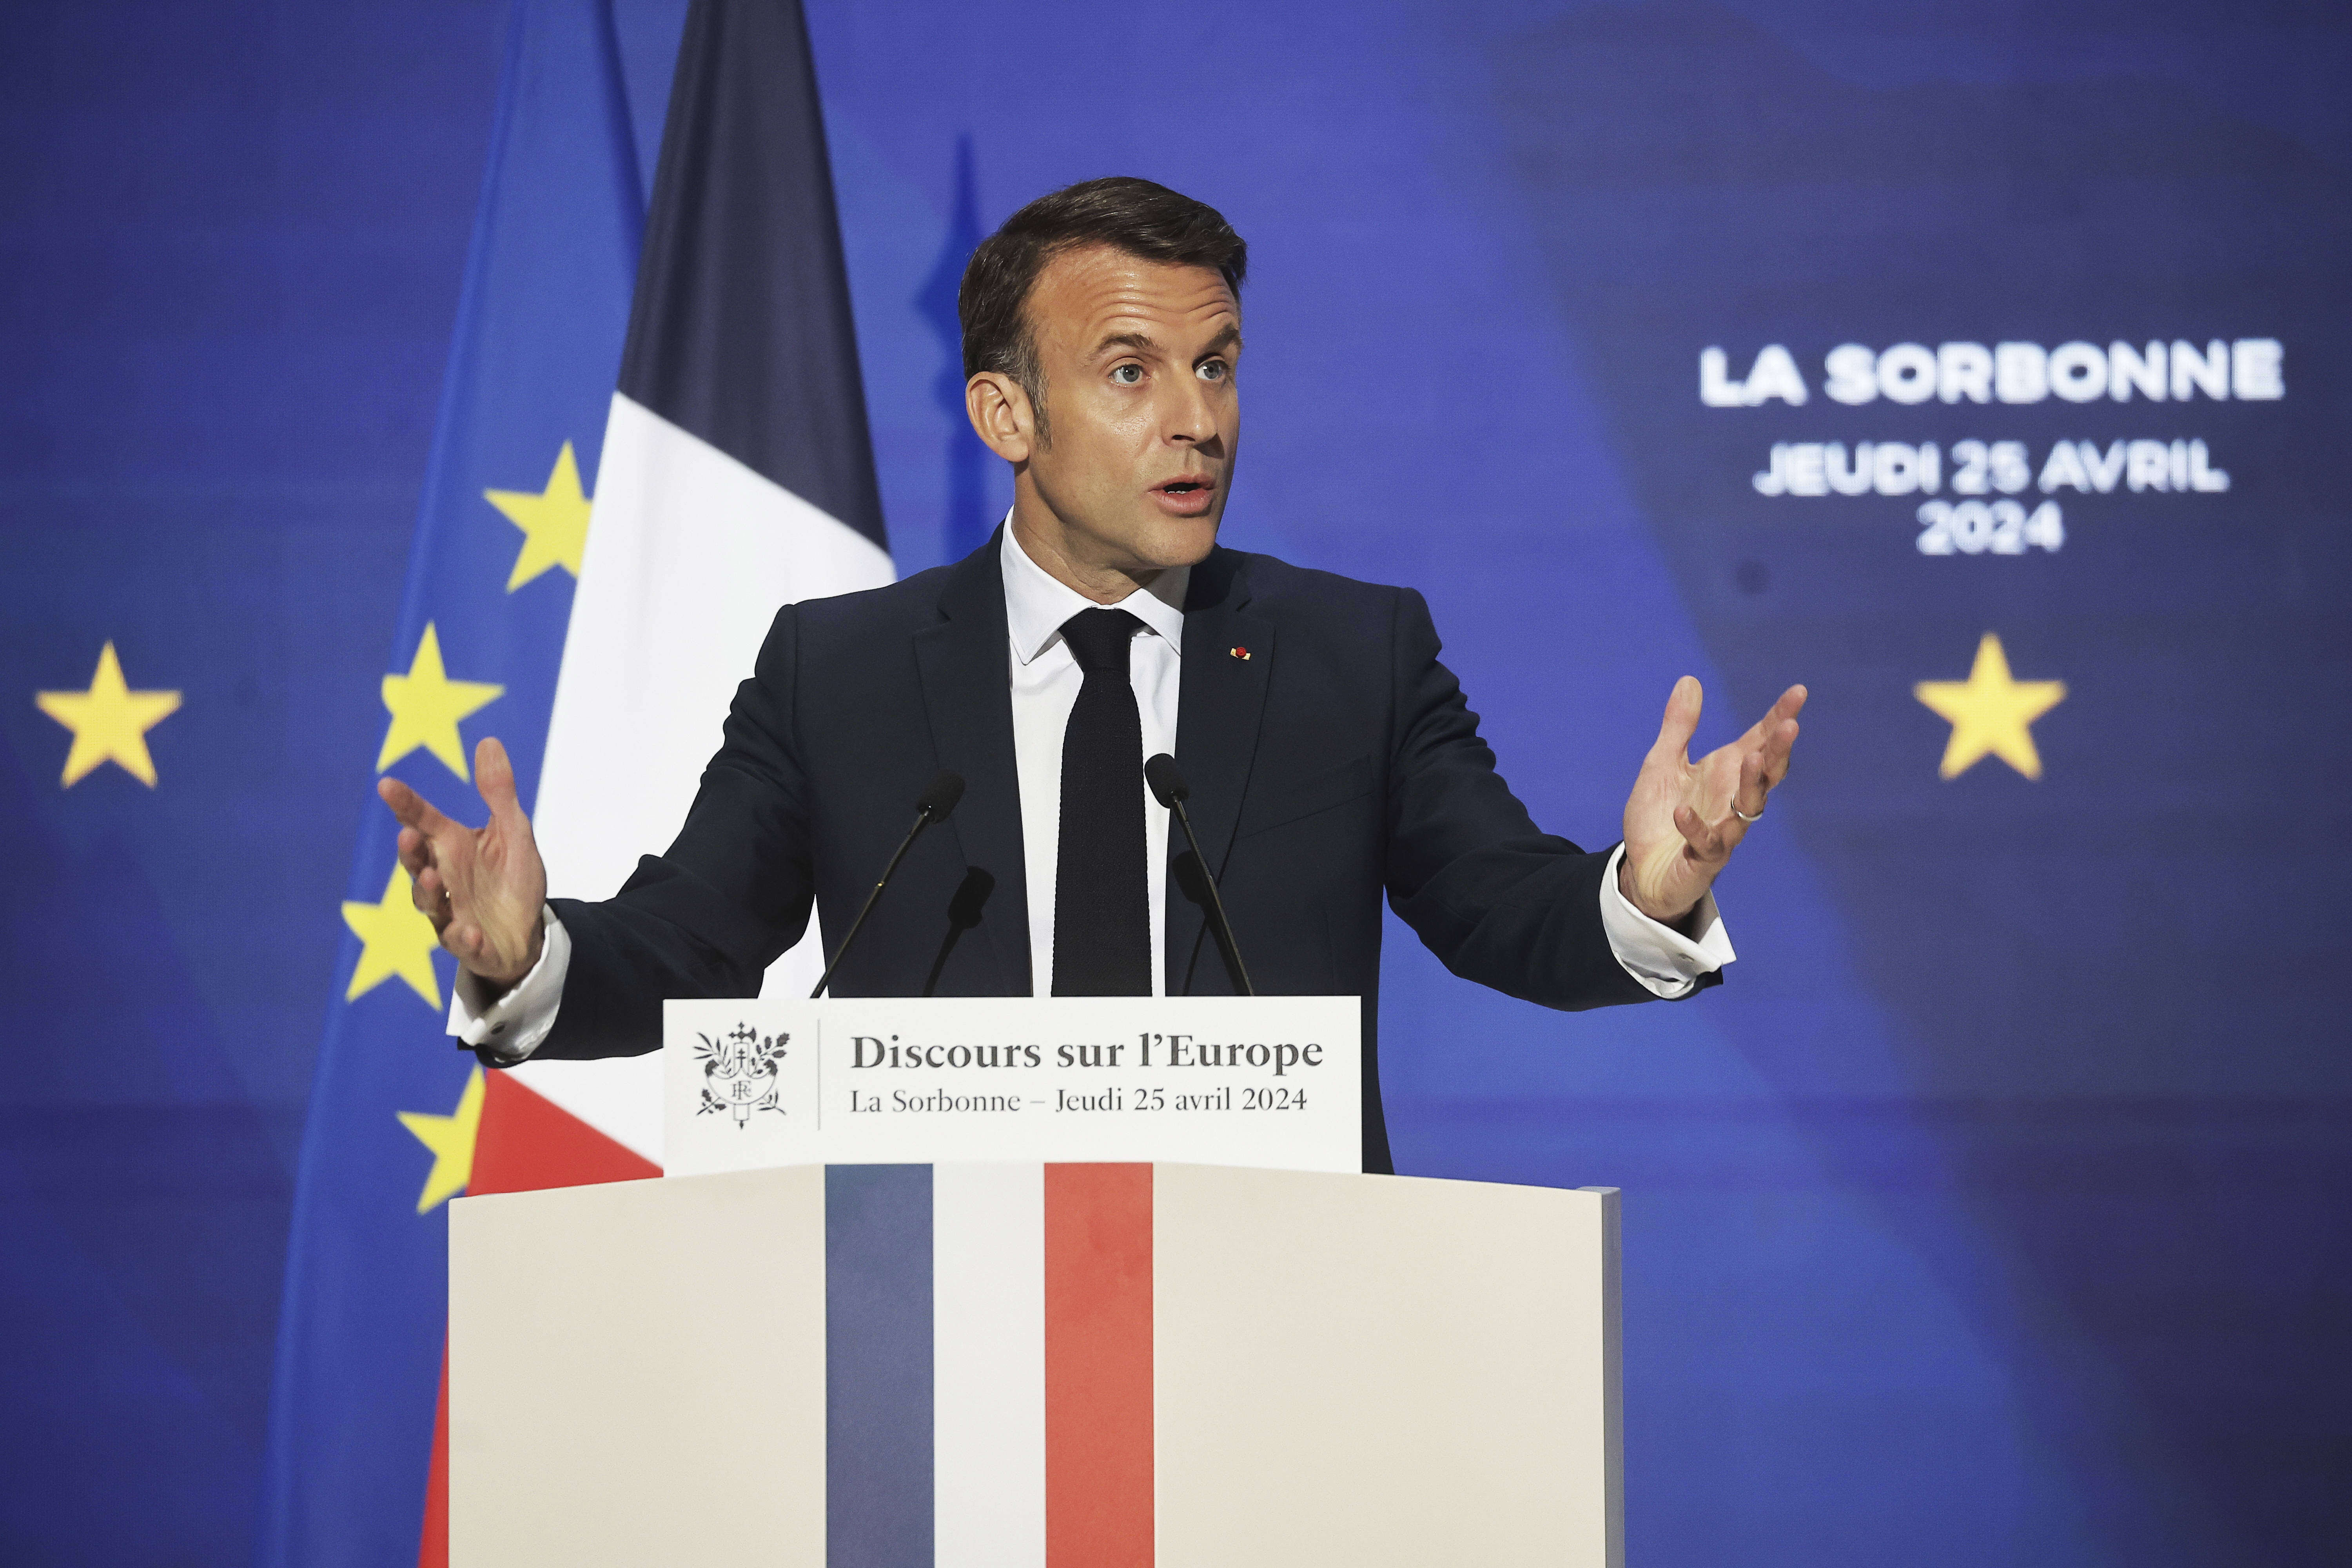 L’Europe « peut mourir », elle risque d’être « reléguée », estime Macron